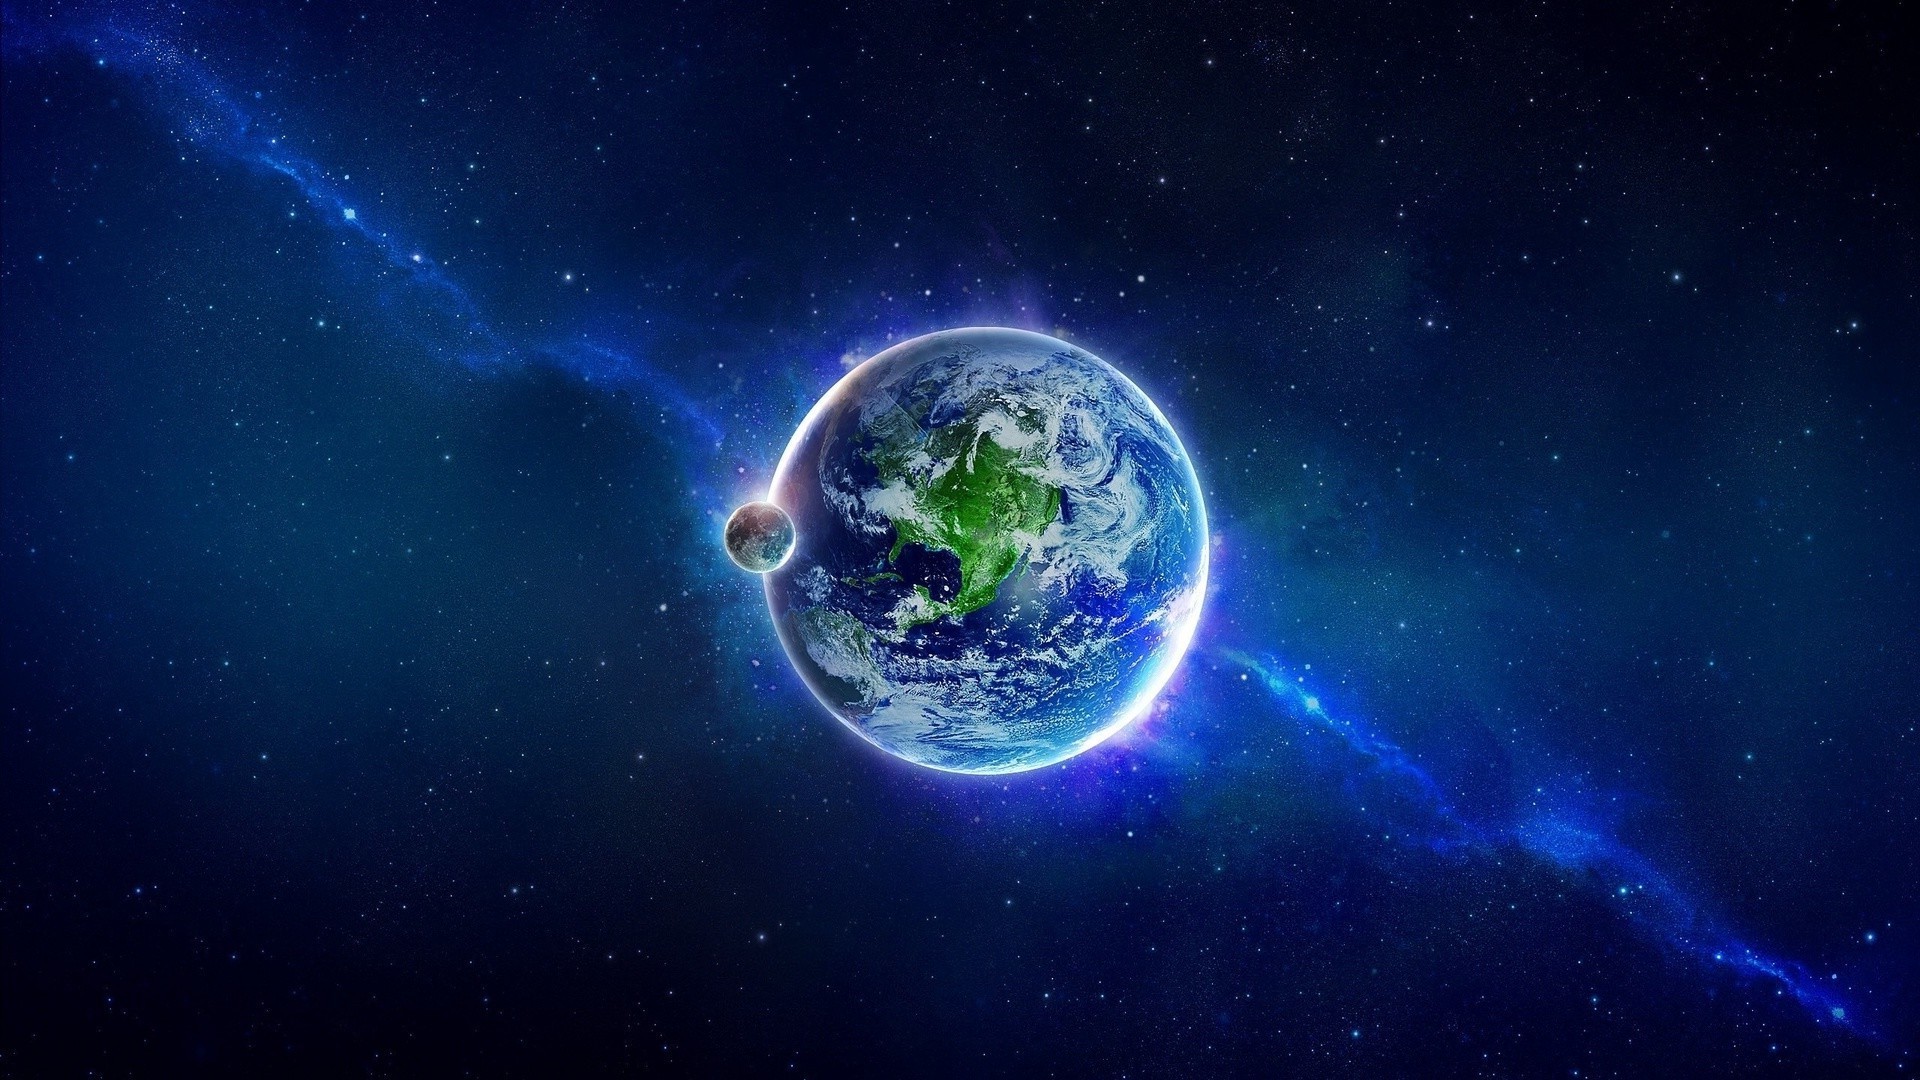 Обои Земной шар картинки на рабочий стол на тему Космос - скачать скачать